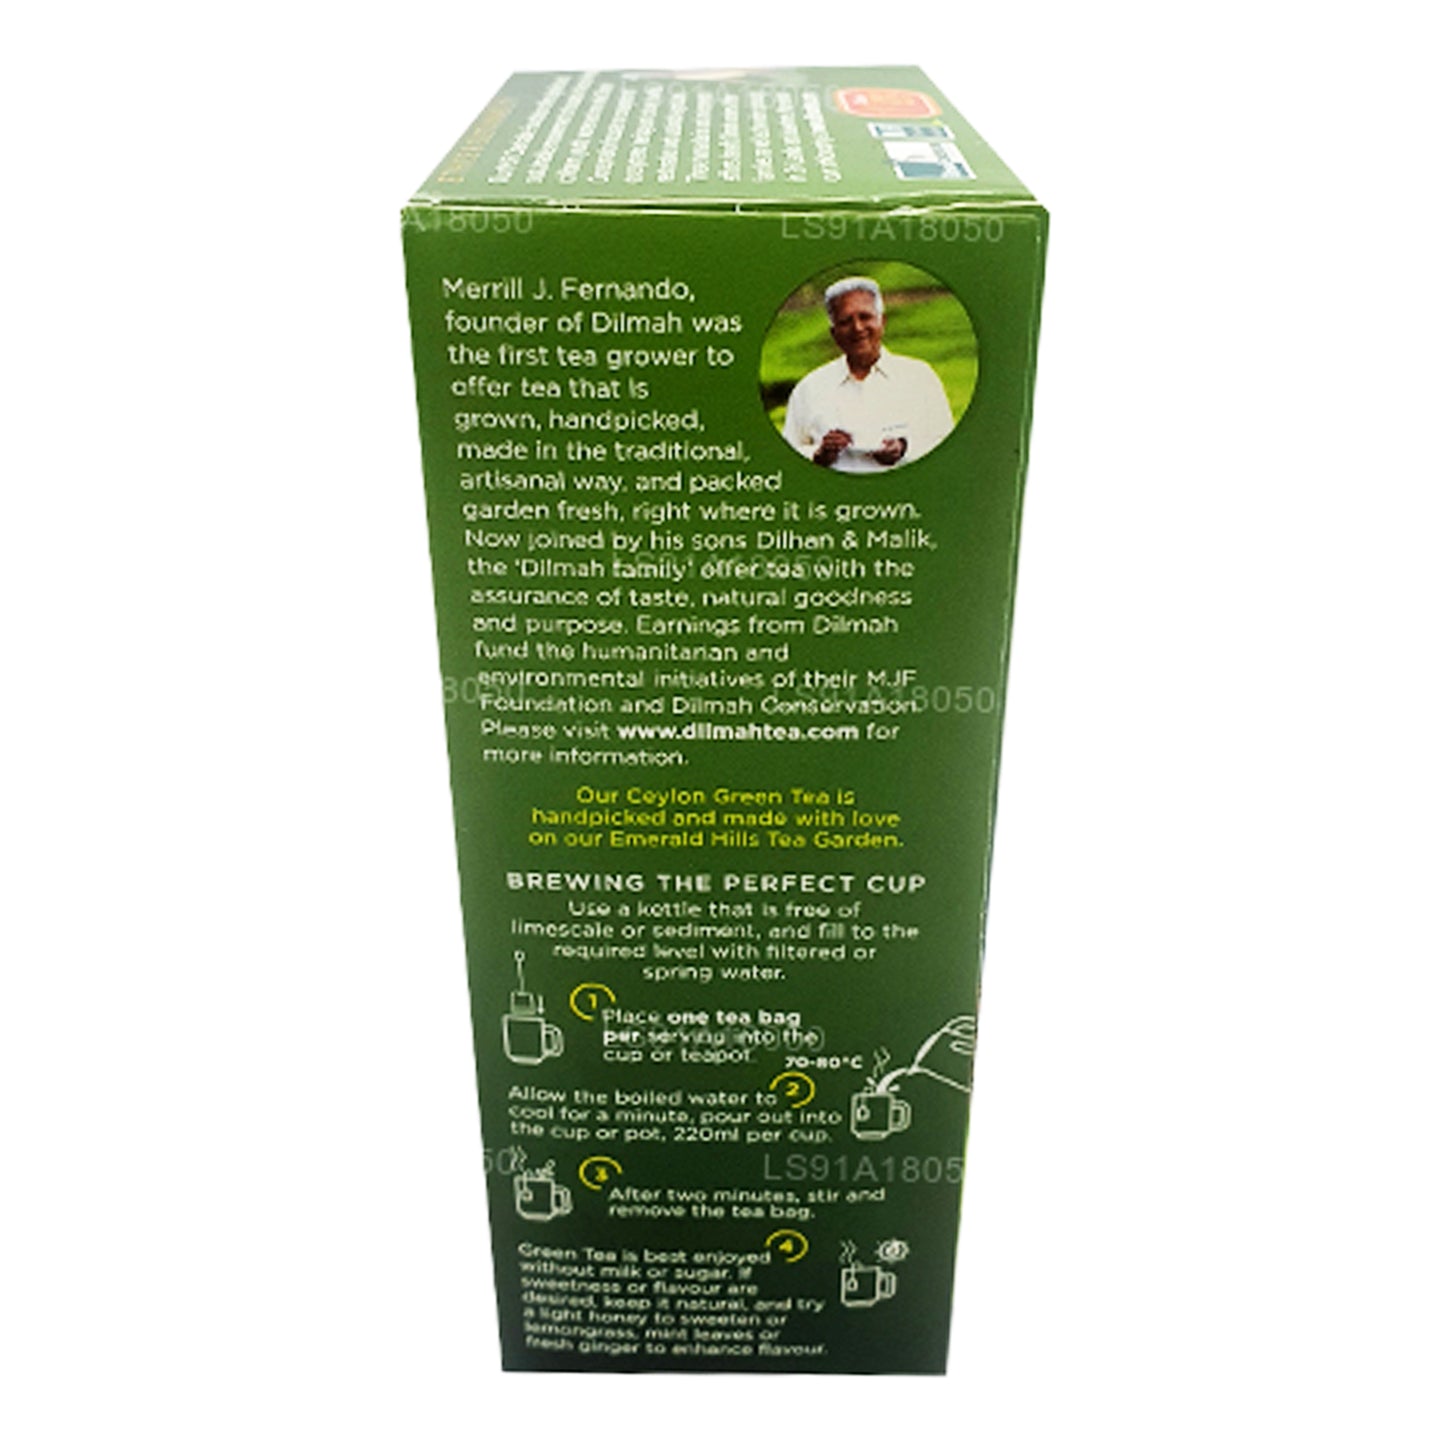 Dilmah Pure Ceylon grönt te (40g) 20 tepåsar